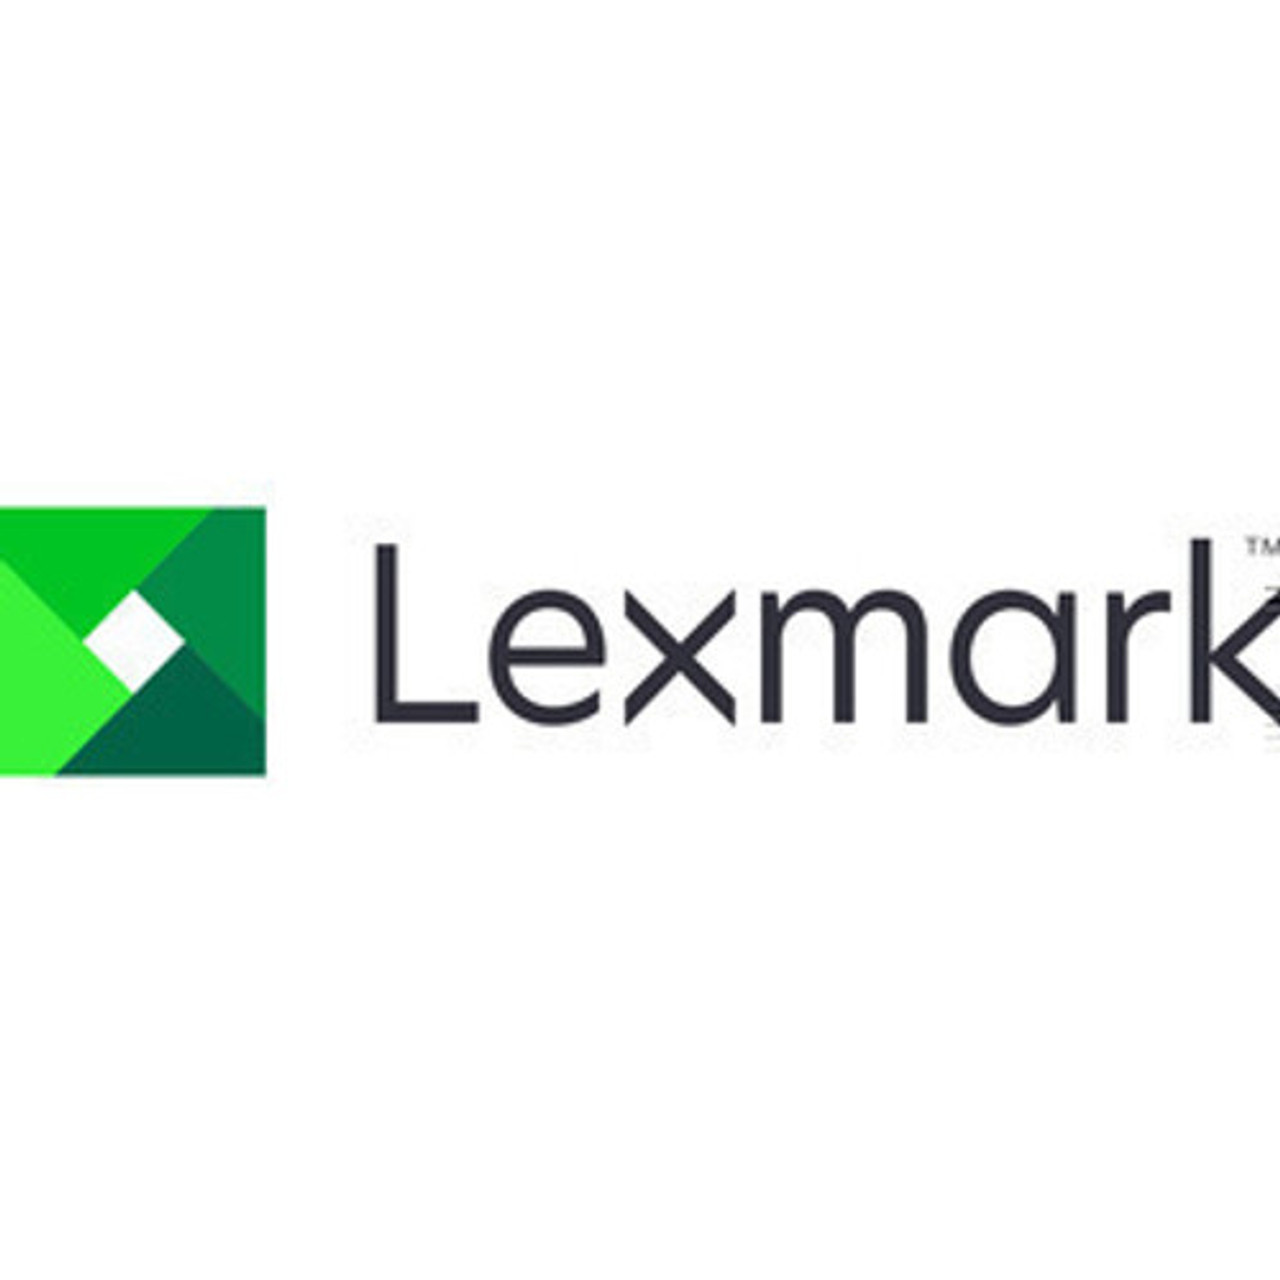 Lexmark 3YR PARTS ONLY CX635   SVCS - 2374696